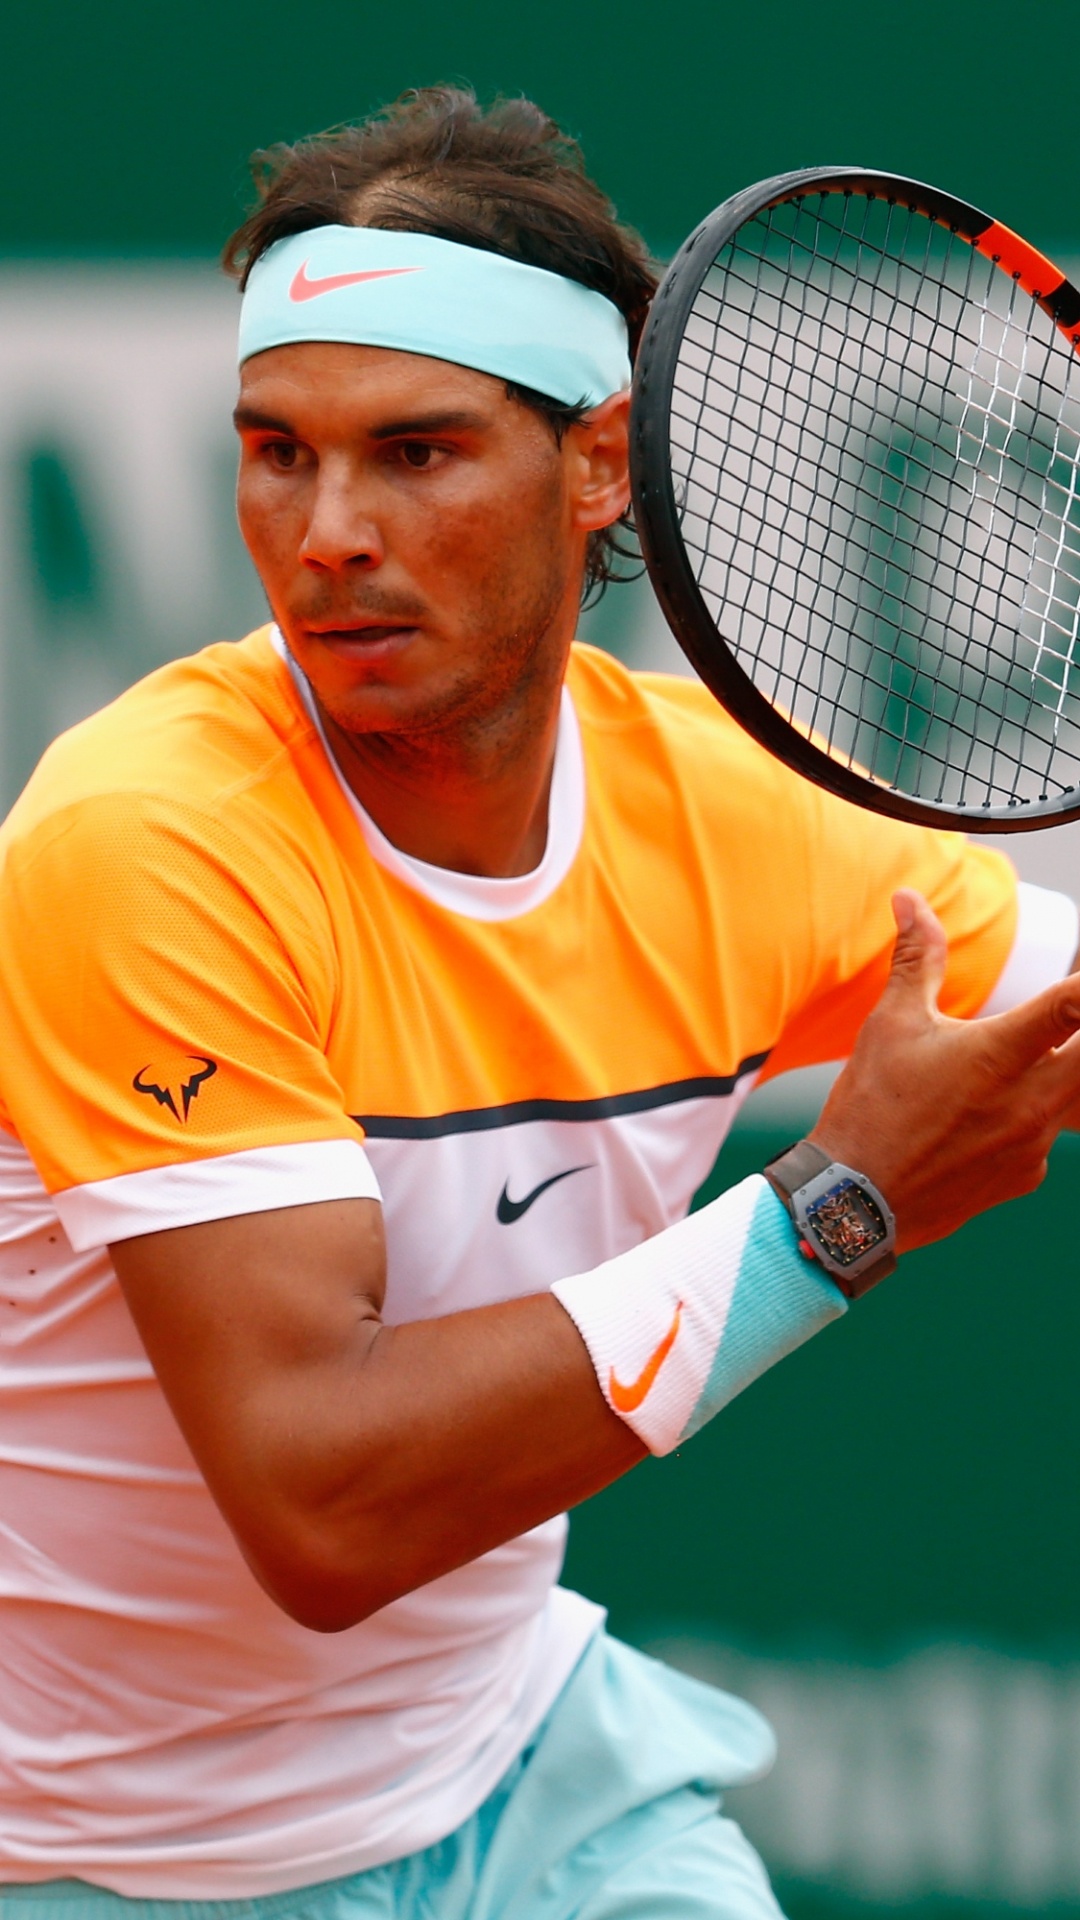 Hombre de Camisa Amarilla Jugando al Tenis. Wallpaper in 1080x1920 Resolution